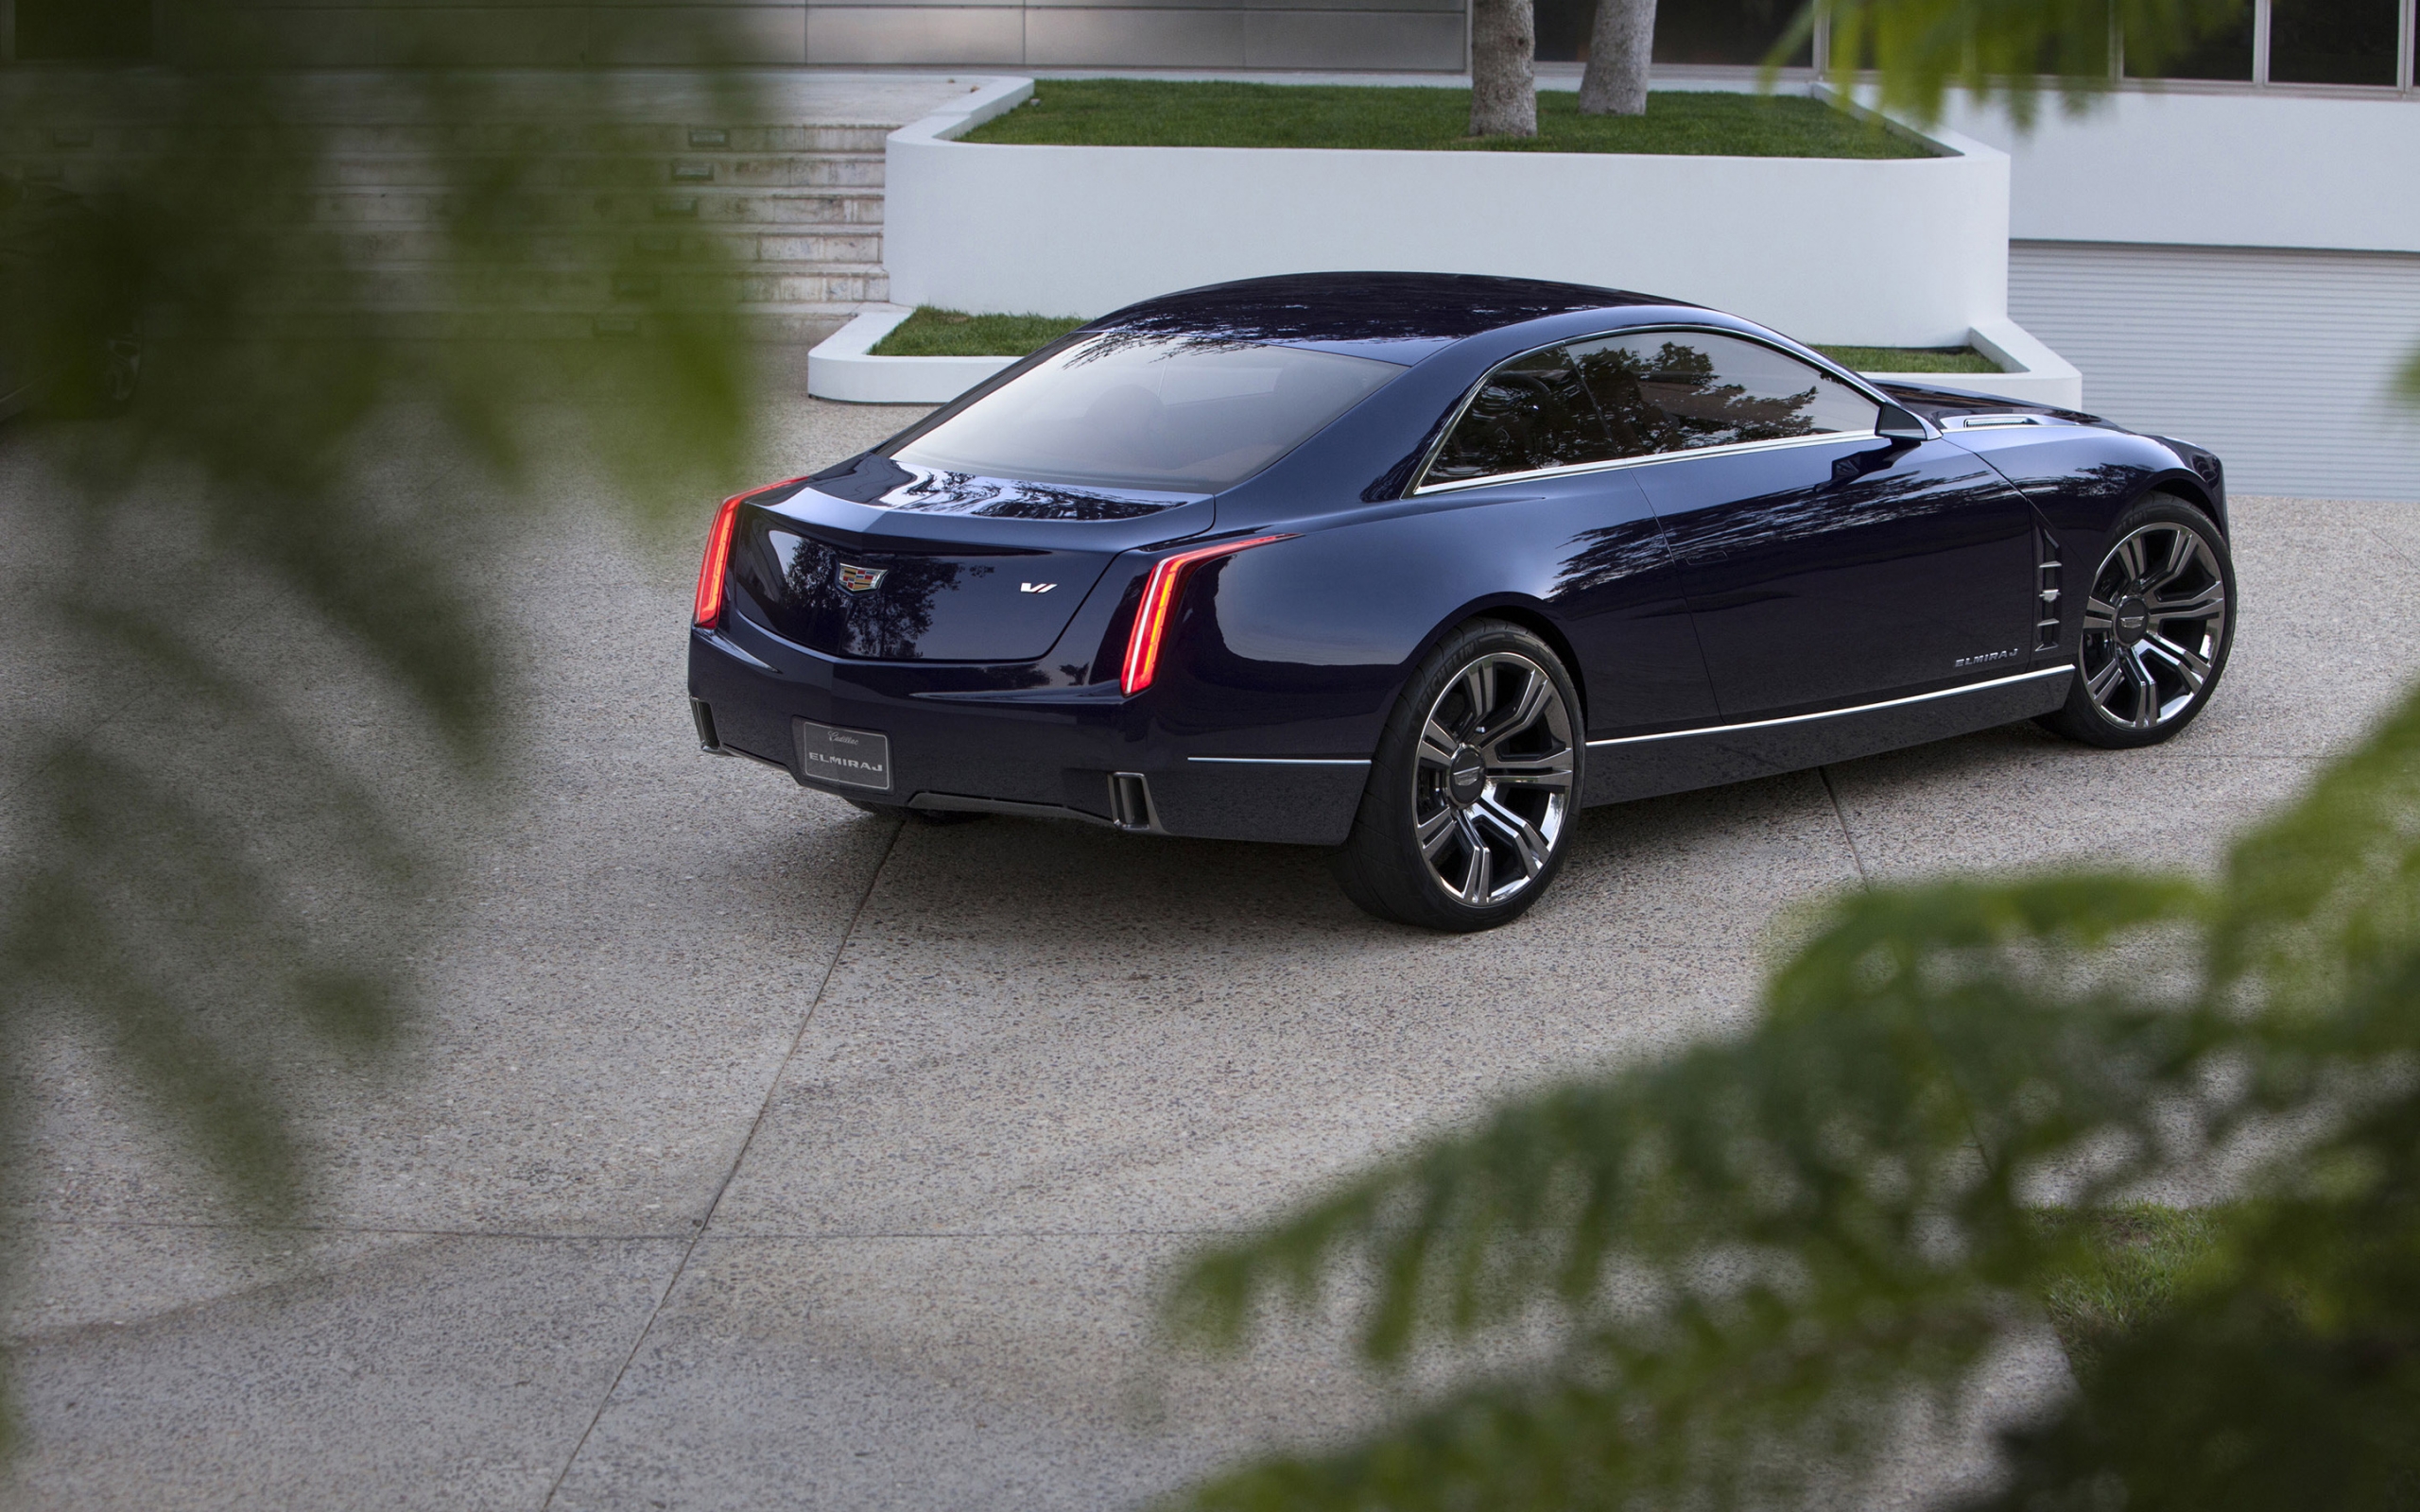 Cadillac Elmiraj Rear for 2560 x 1600 widescreen resolution